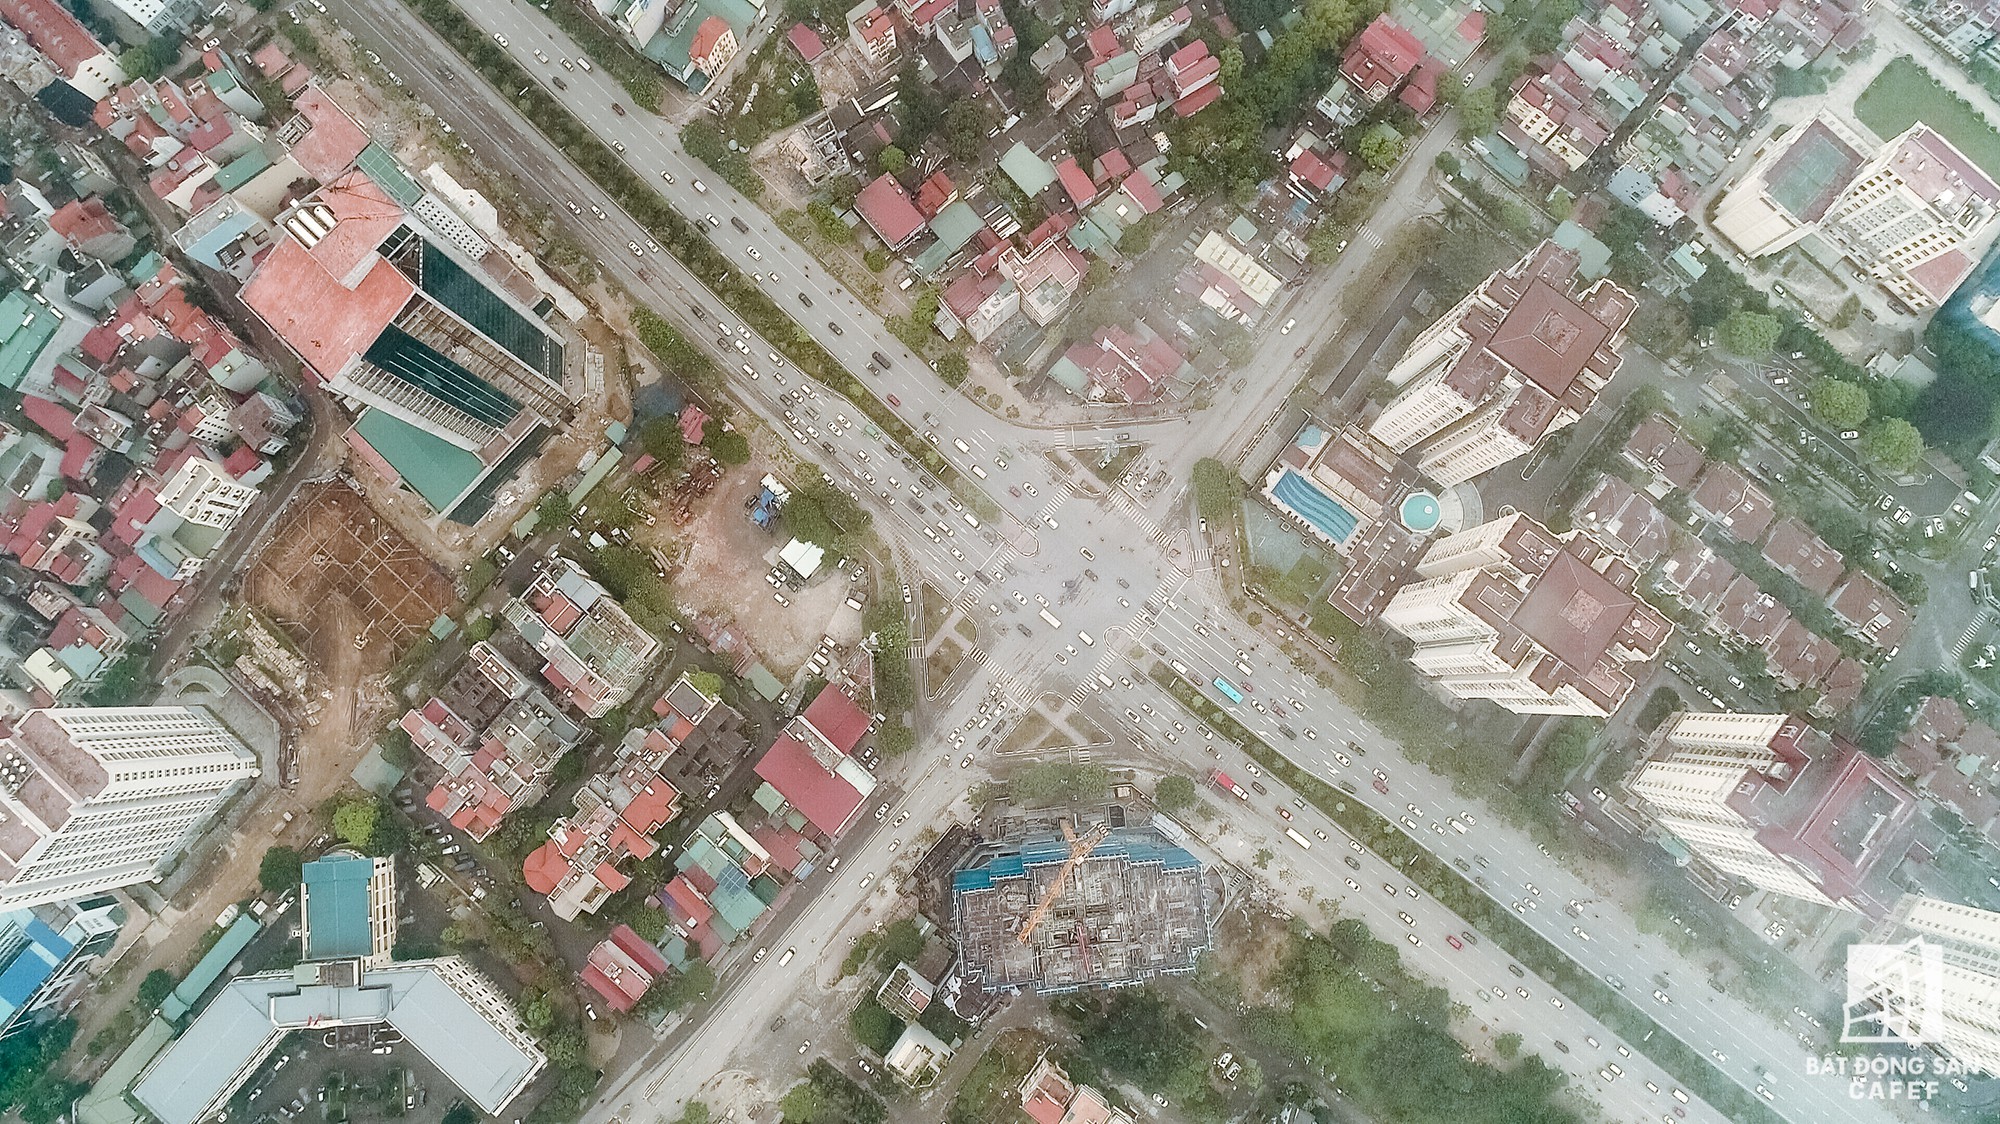 Cận cảnh hàng loạt dự án cao ốc dọc trục đường 8 làn xe tại trung tâm Hà Nội - Ảnh 9.